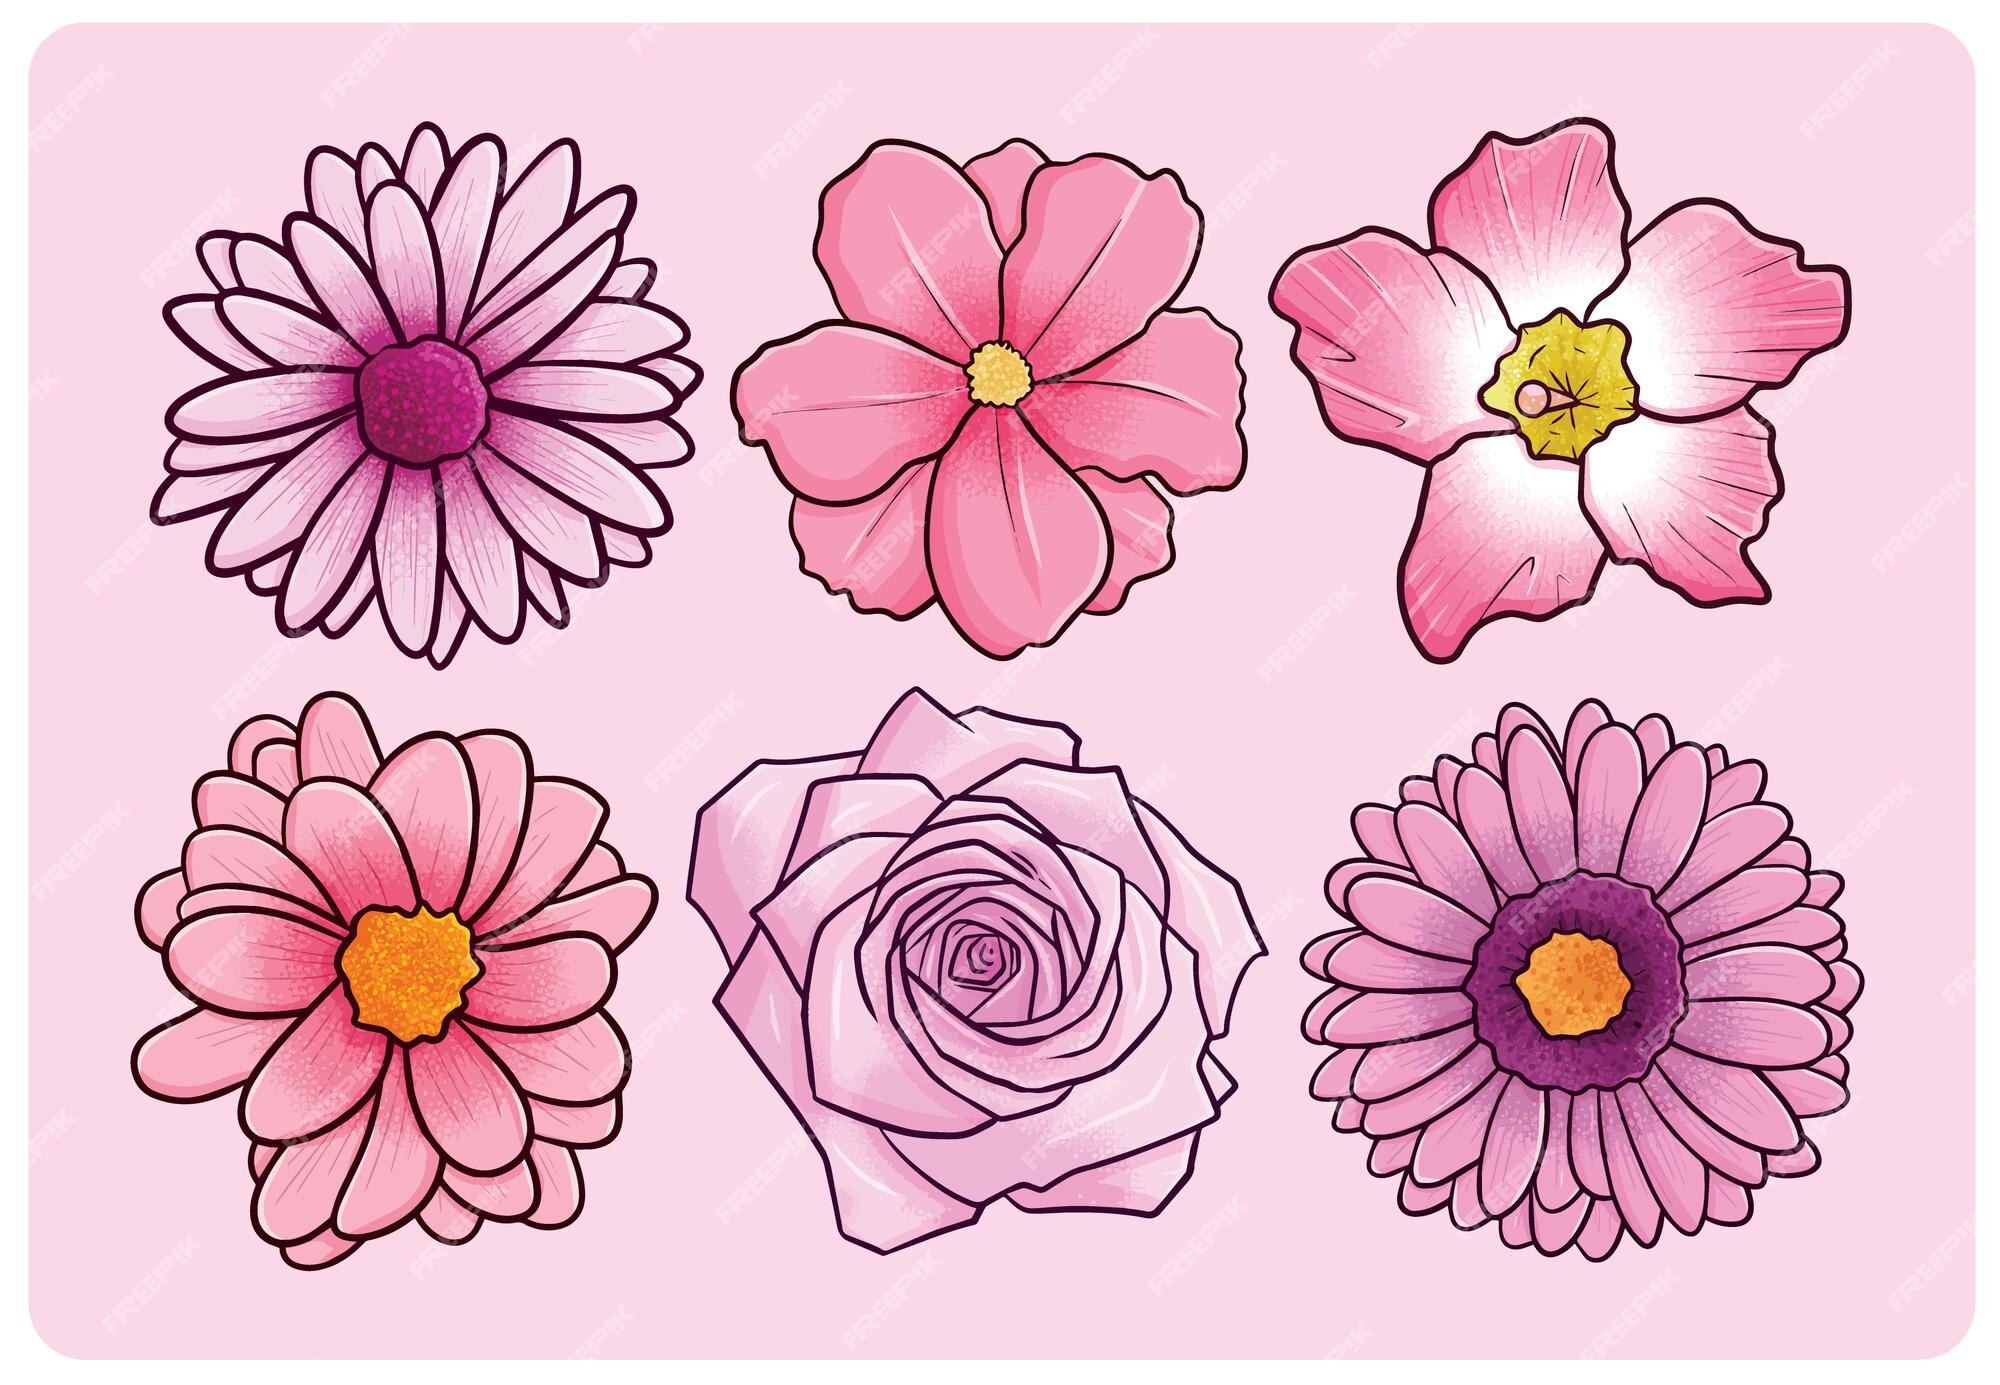 Vectores e ilustraciones de Flor rosa dibujo para descargar gratis | Freepik